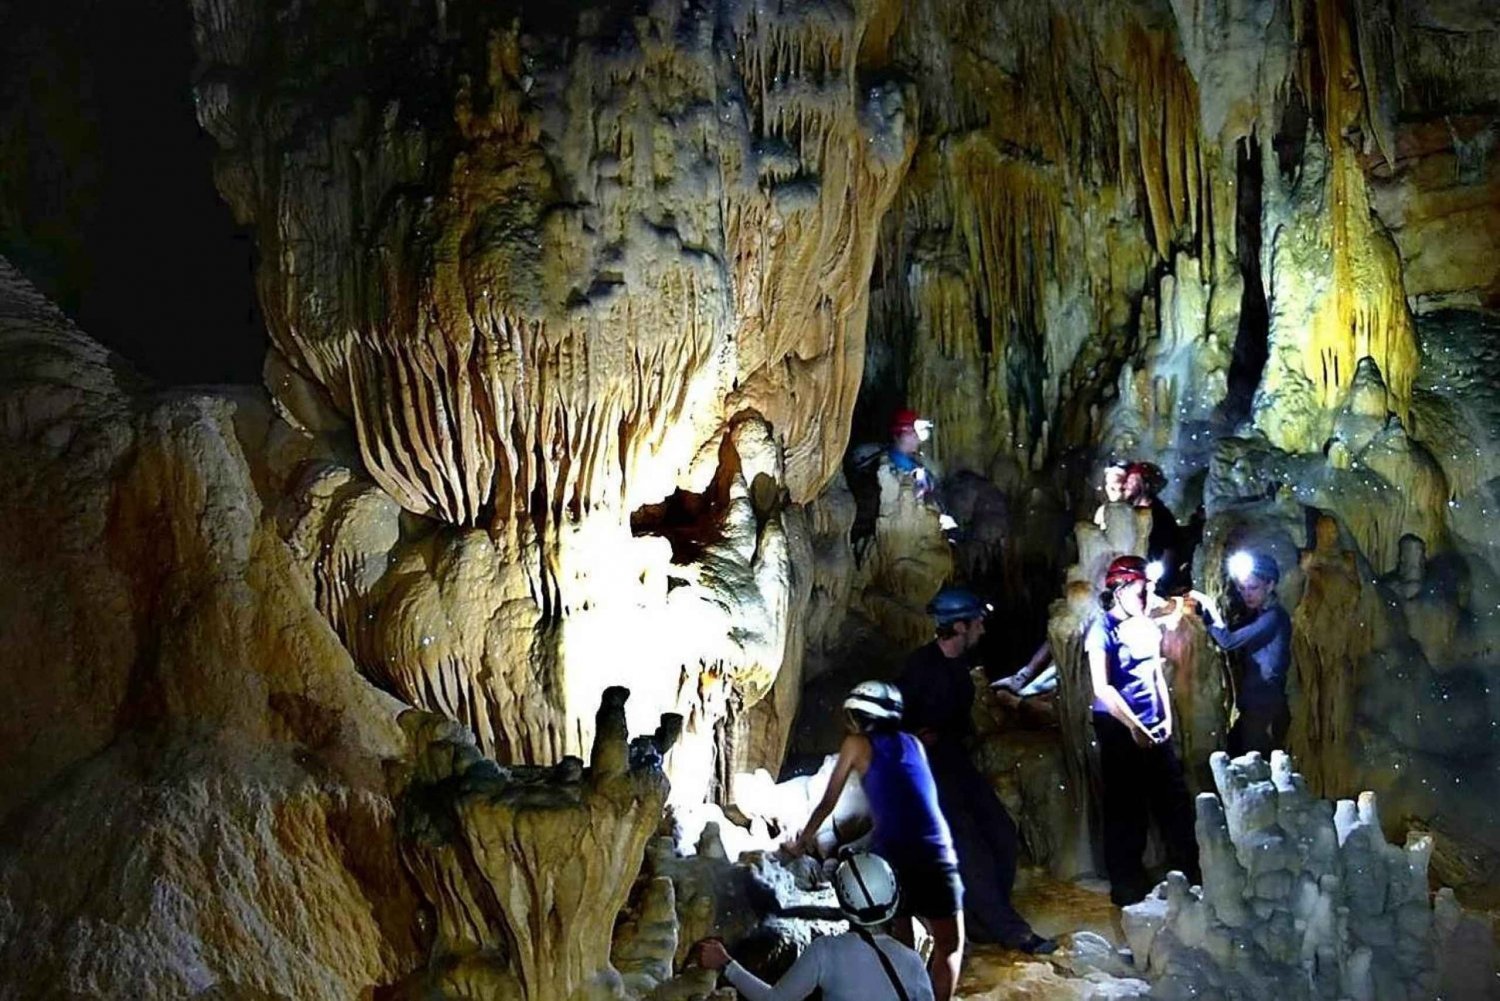 San Ignacio: Crystal Cave & Blue Hole National Park + Lunch